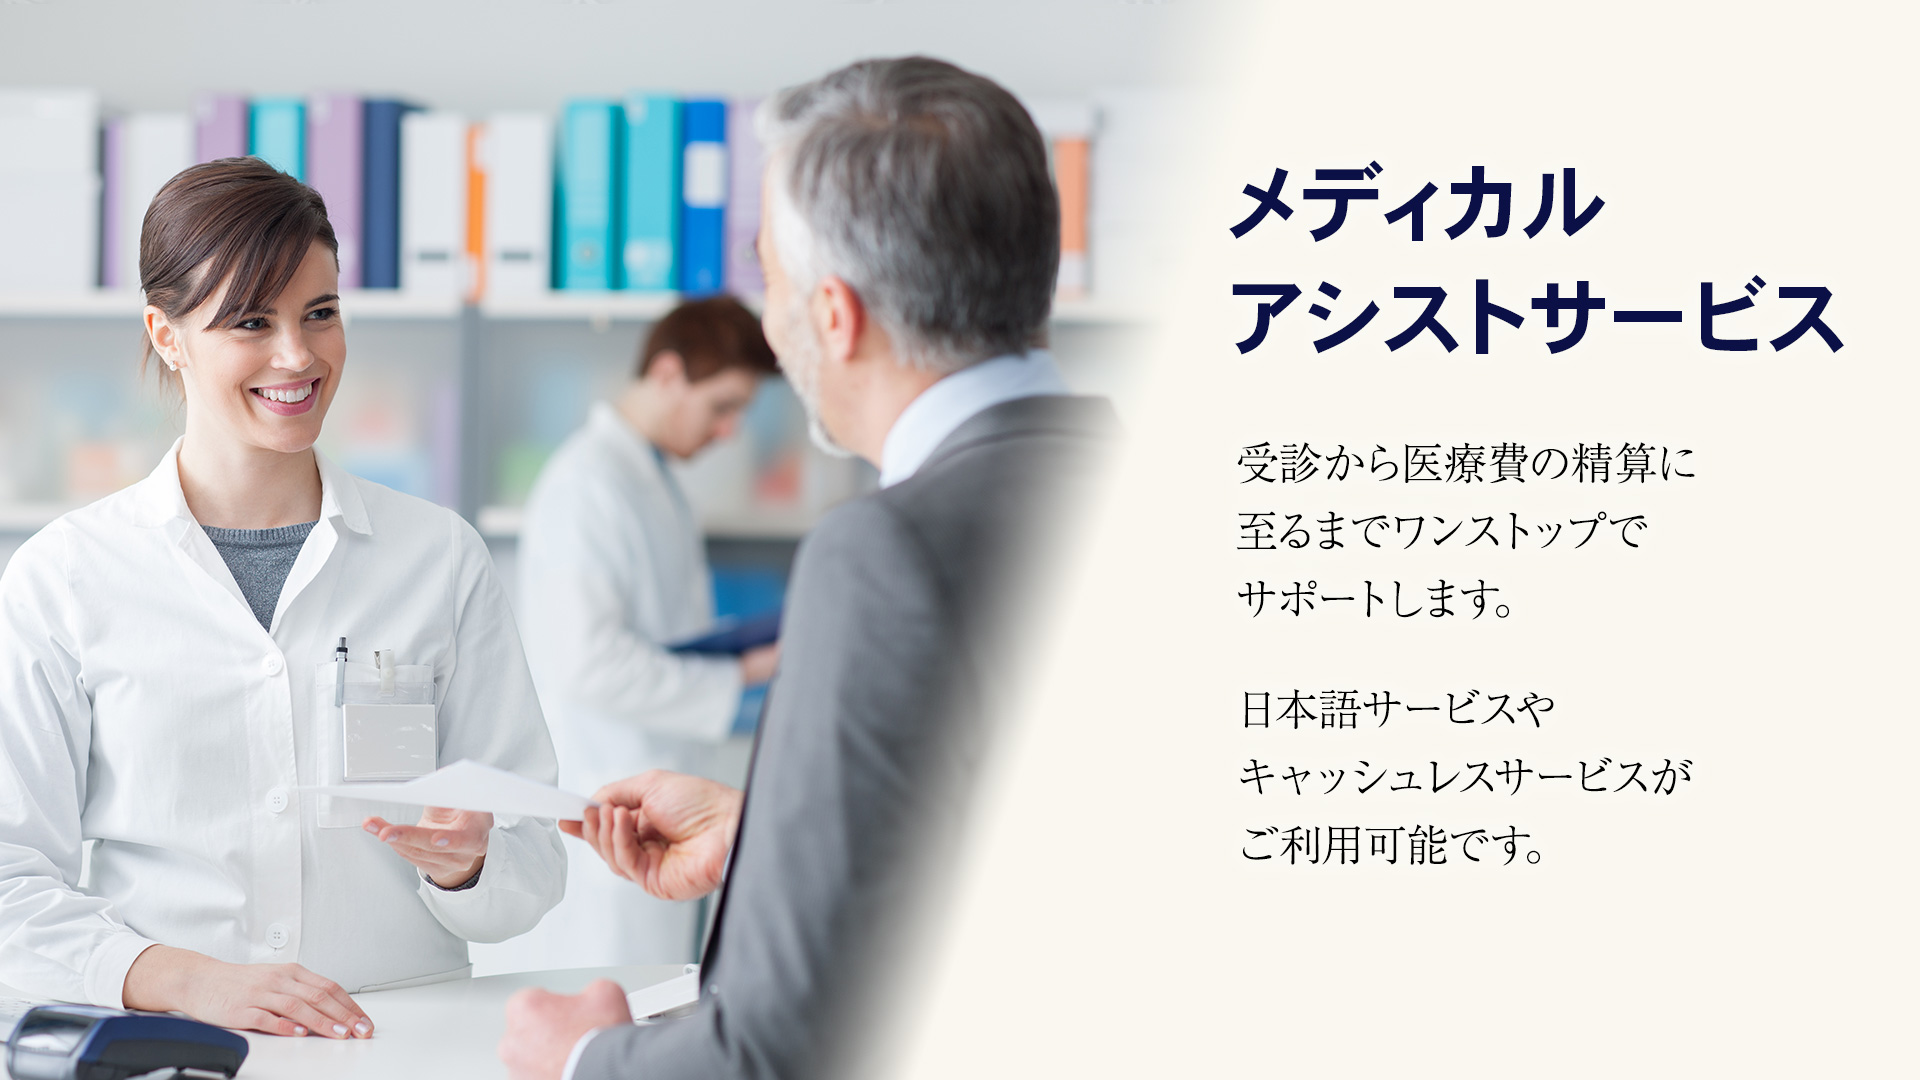 メディカルアシストサービス, 受診から医療費の清算に至るまでワンストップでサポートします。日本語サービスやキャッシュレスサービスがご利用可能です。